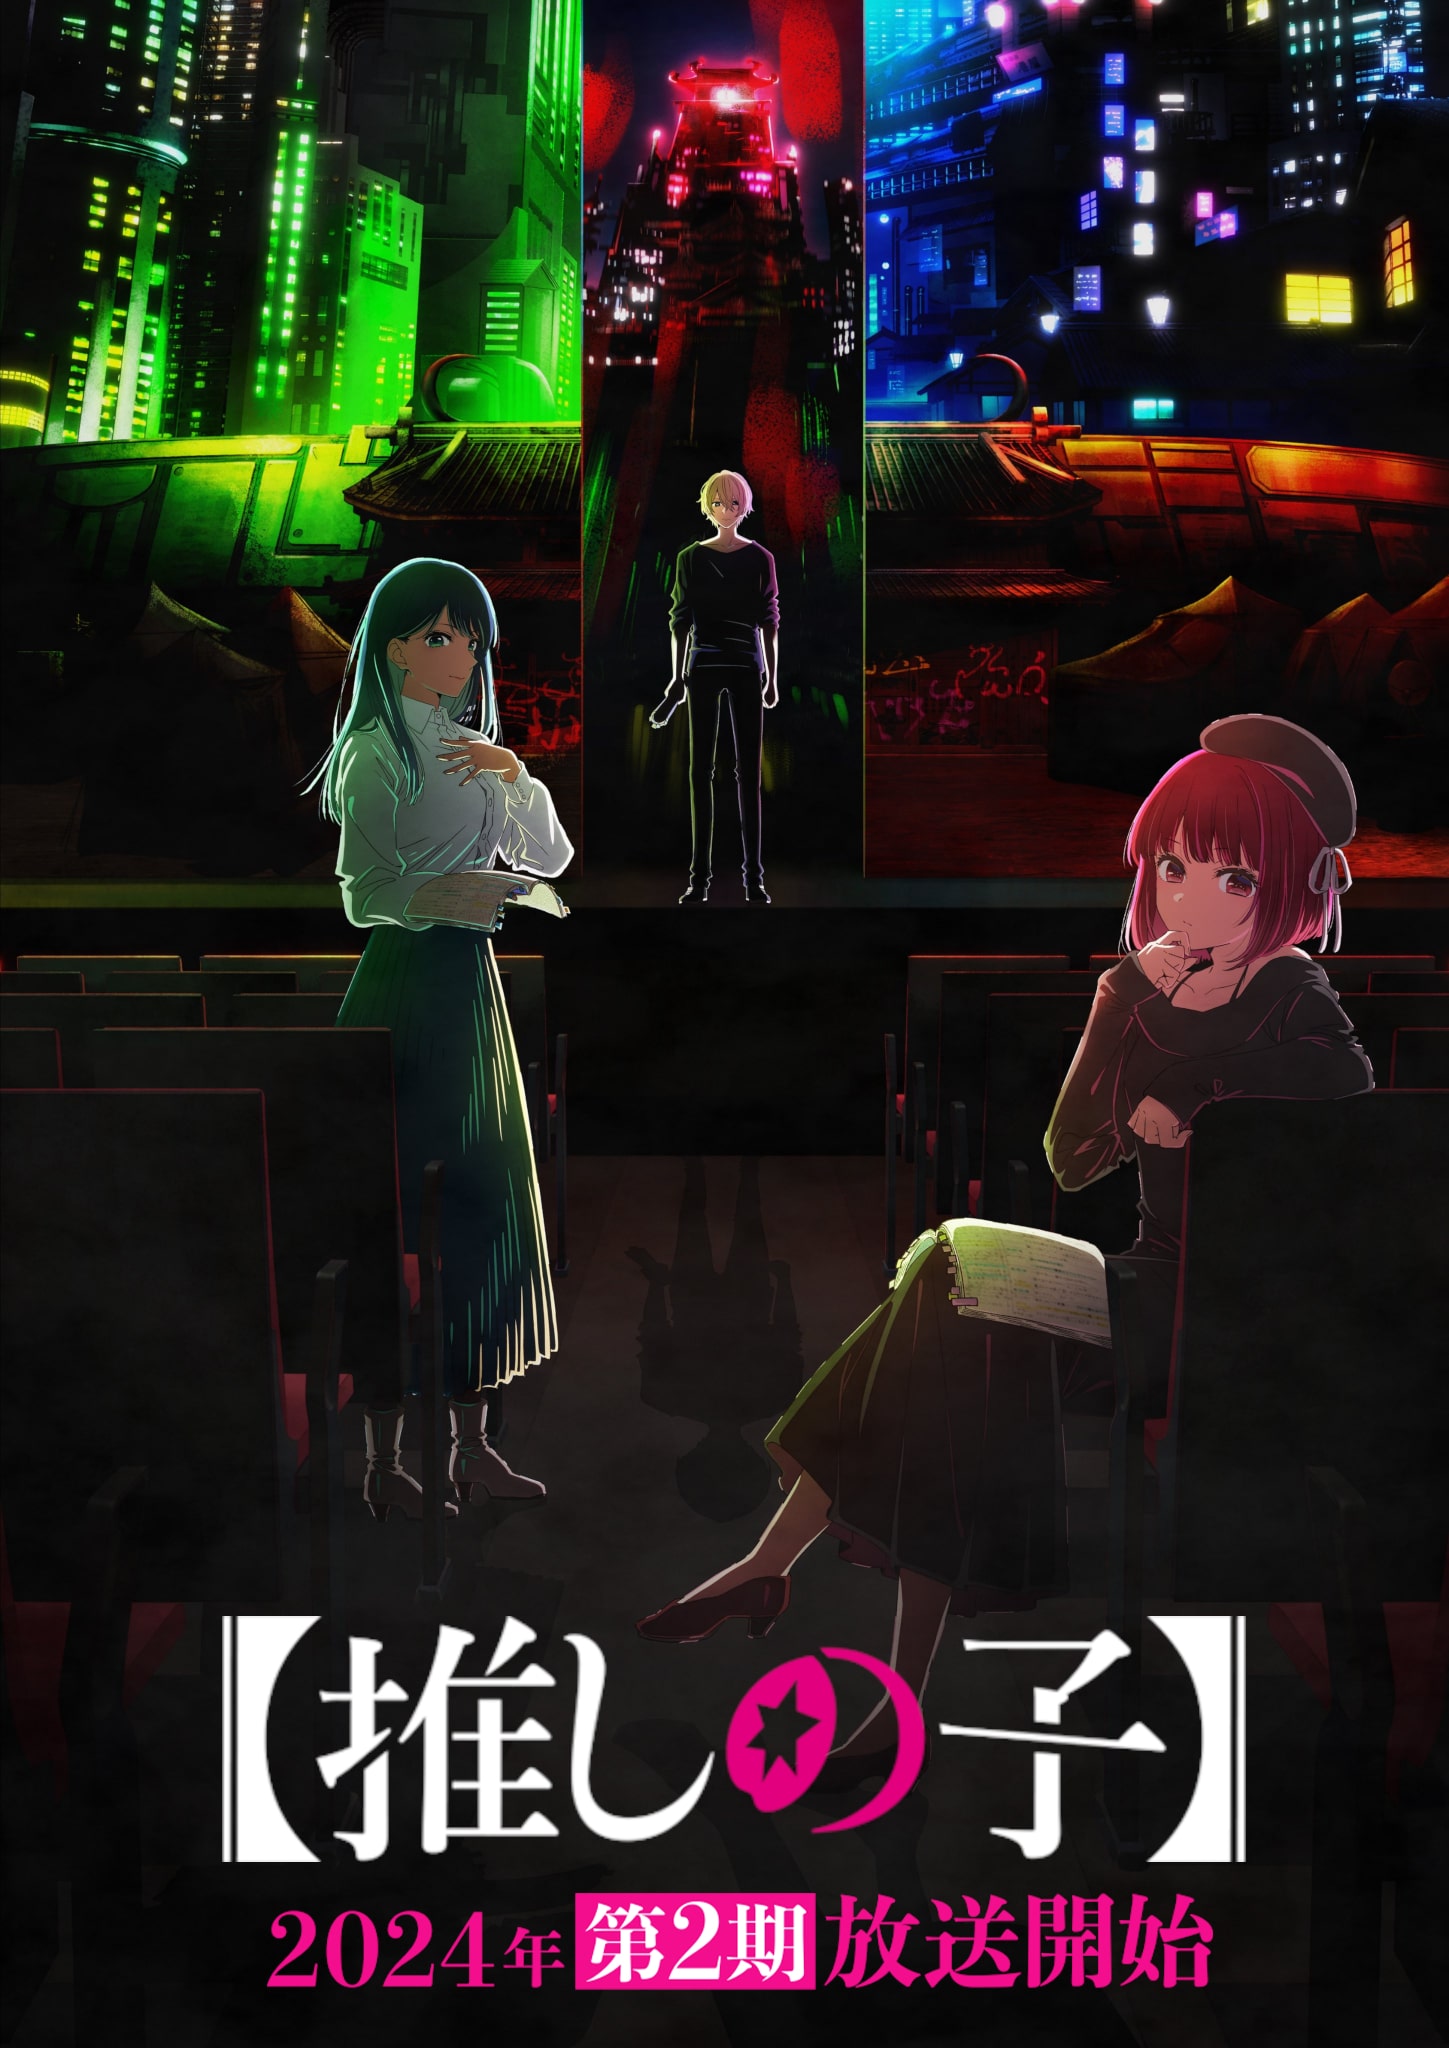 Second visuel pour la saison 2 de l'anime OSHI NO KO